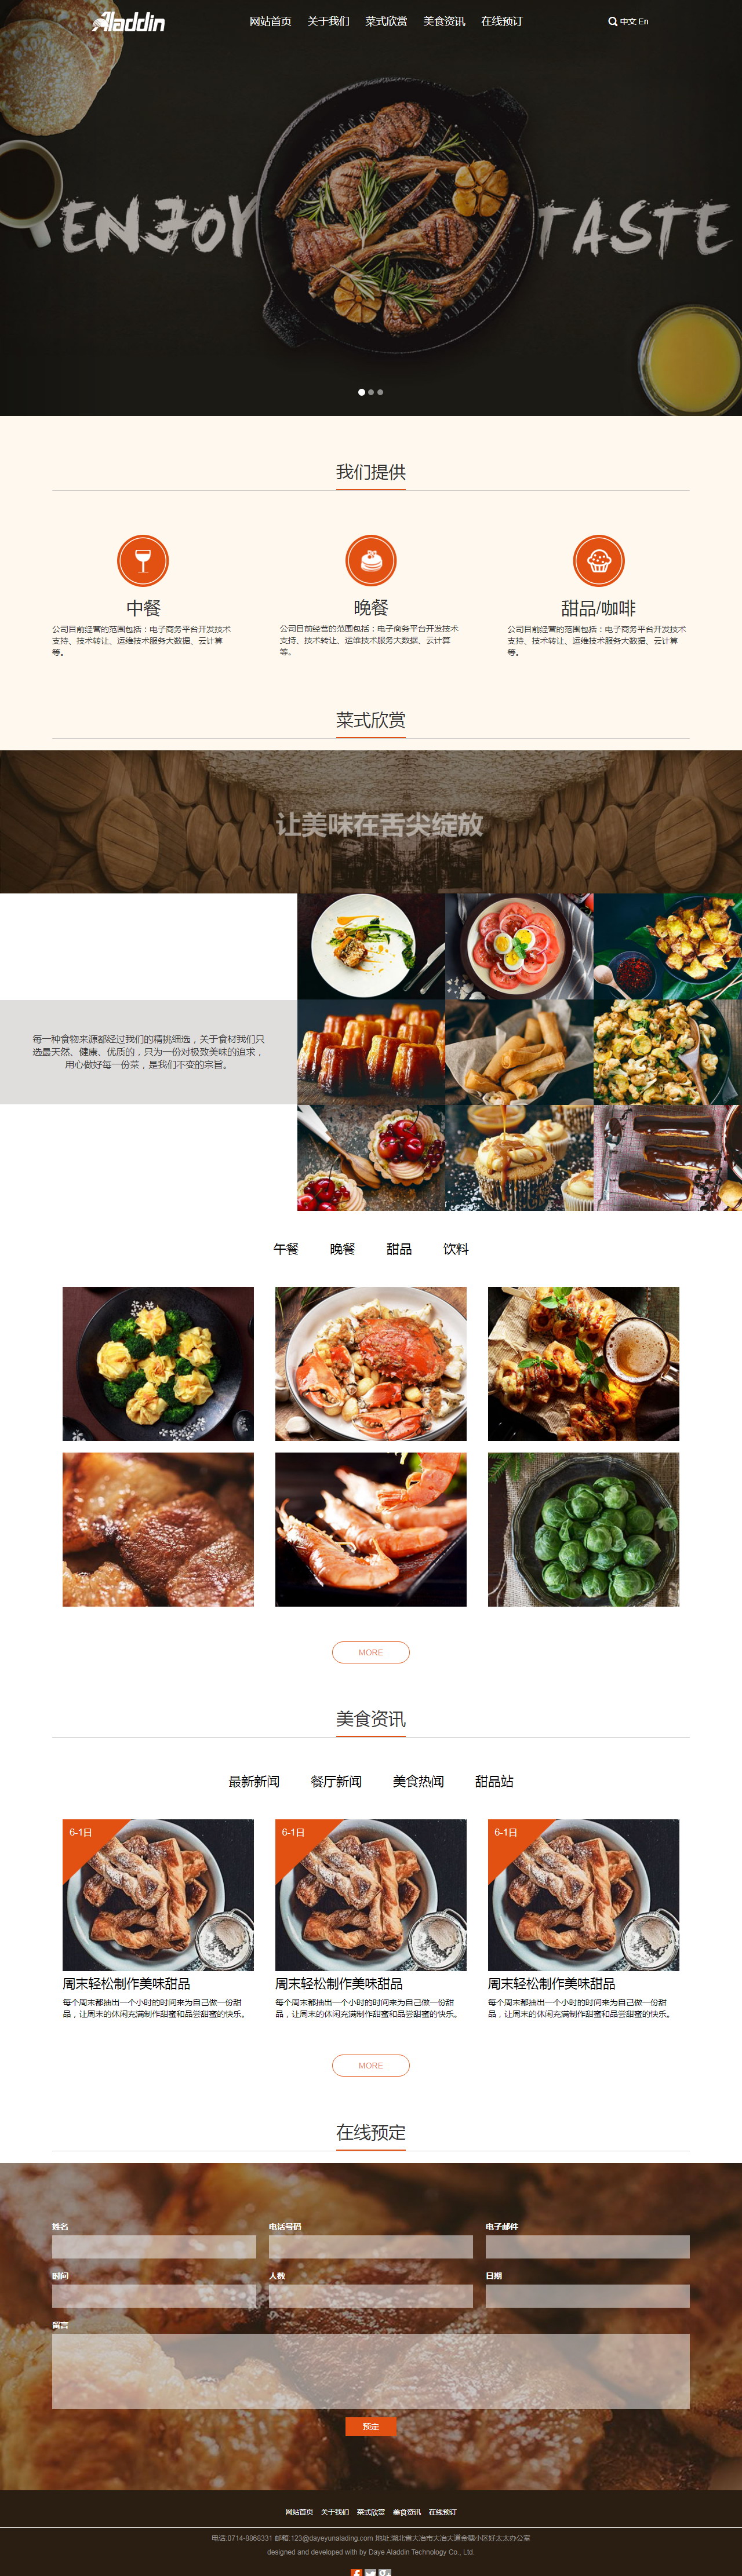 美食餐厅网站 毕业设计 课程设计